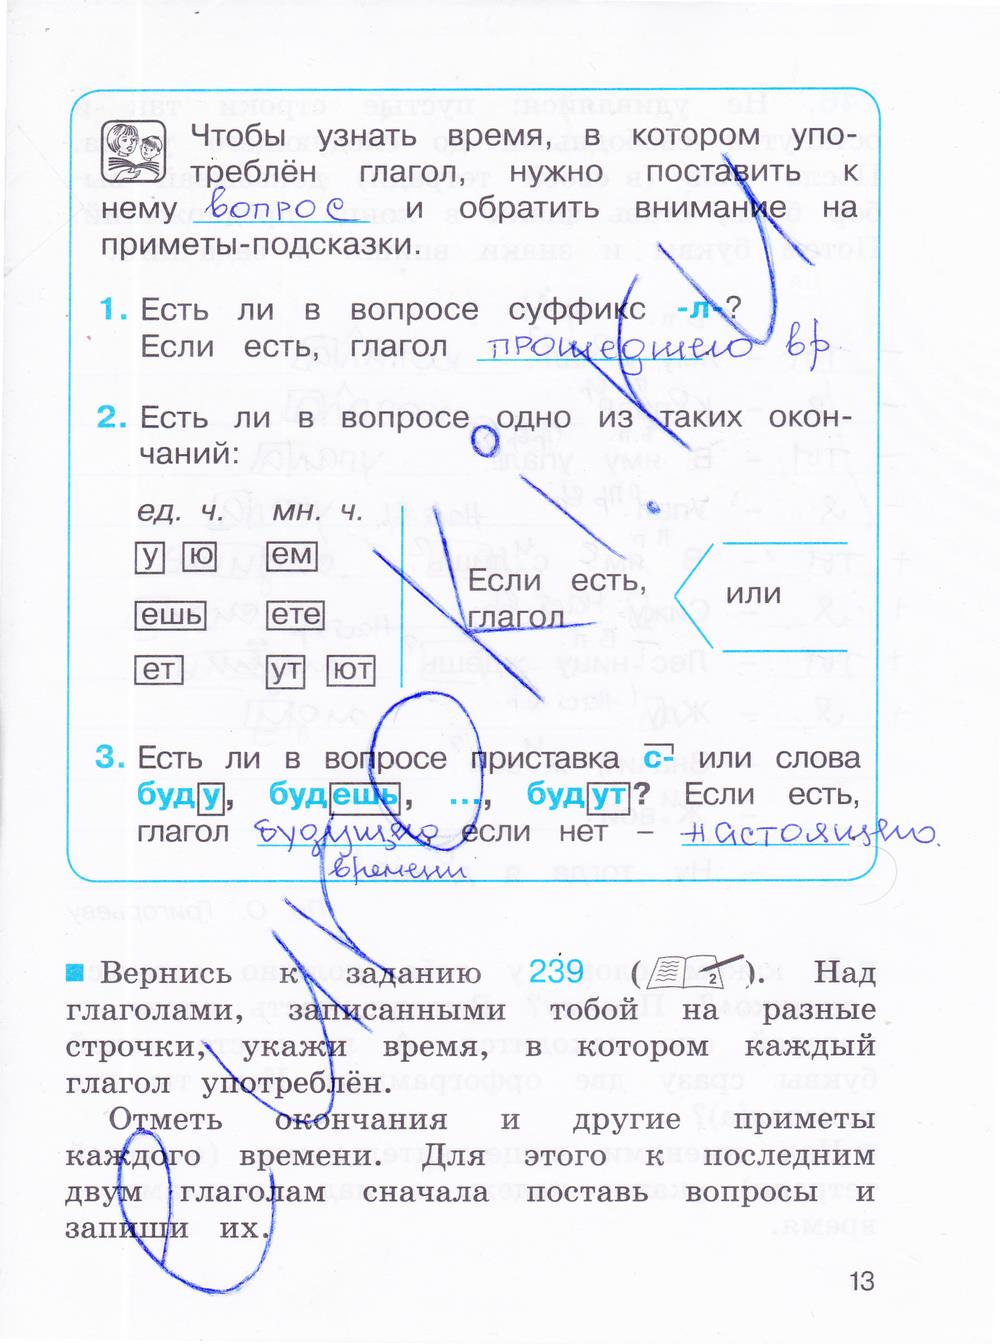 гдз 3 класс рабочая тетрадь часть 2 страница 13 русский язык Соловейчик, Кузьменко